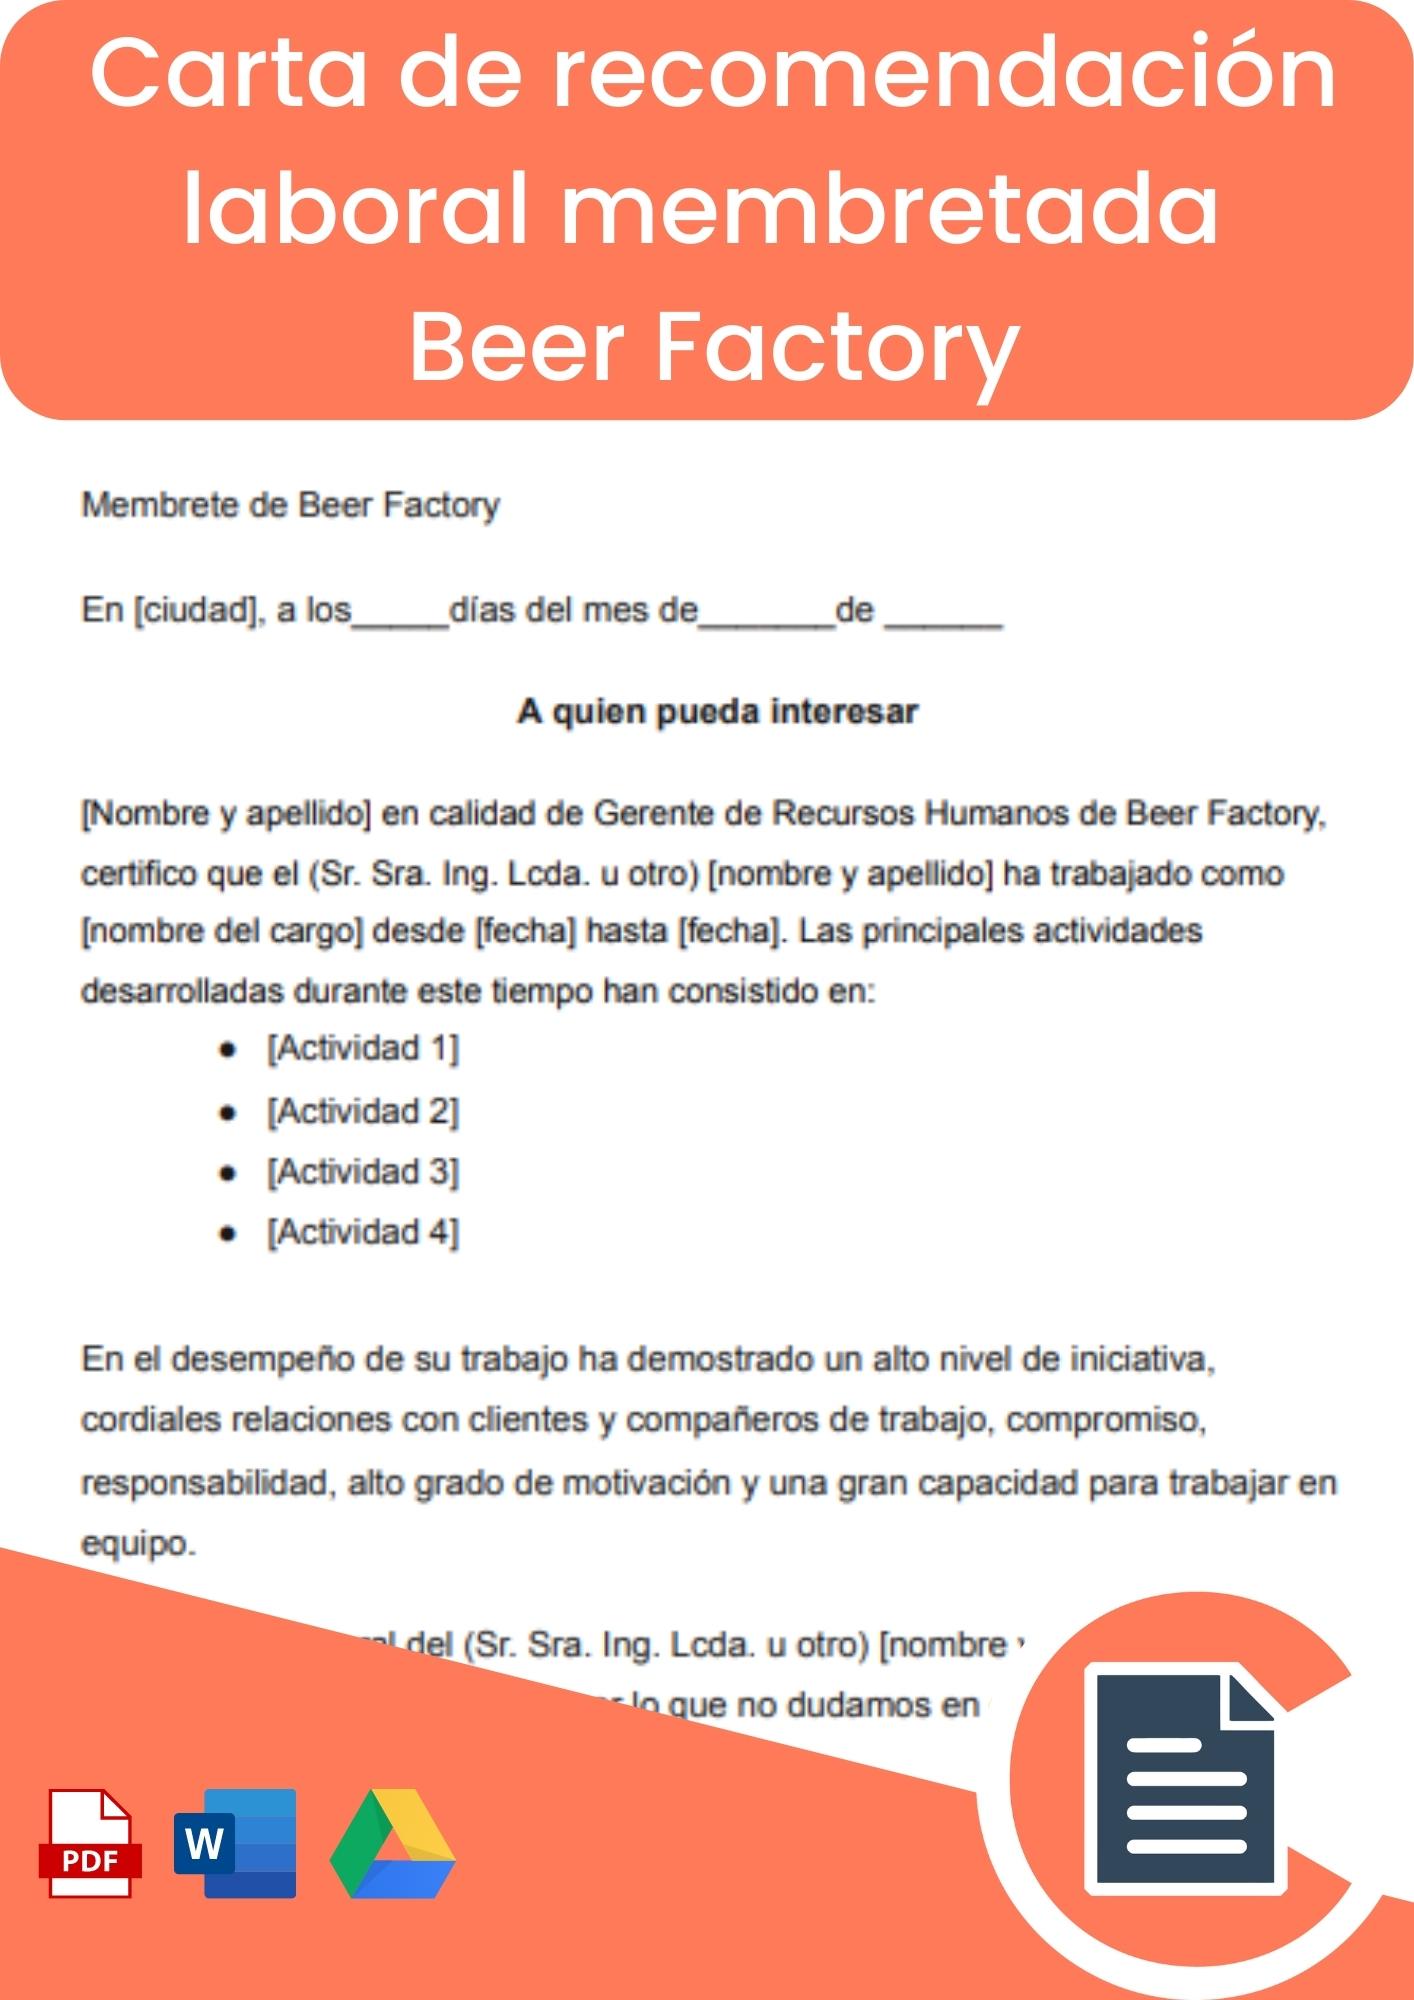 Carta de recomendación laboral membretada Beer Factory